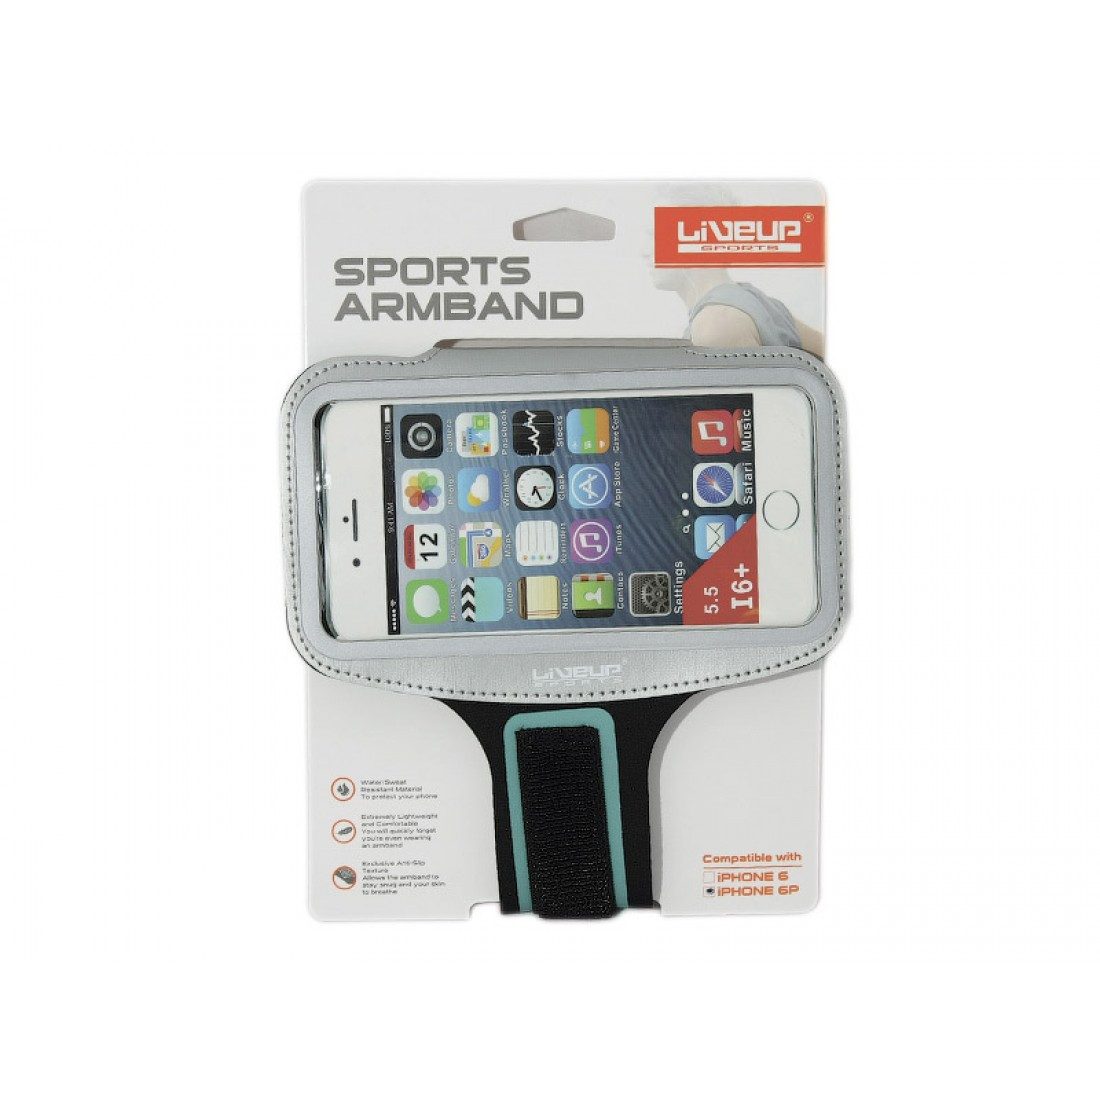 Чохол для телефону на руку LiveUp Sports Armband, LS3720B, фото 1